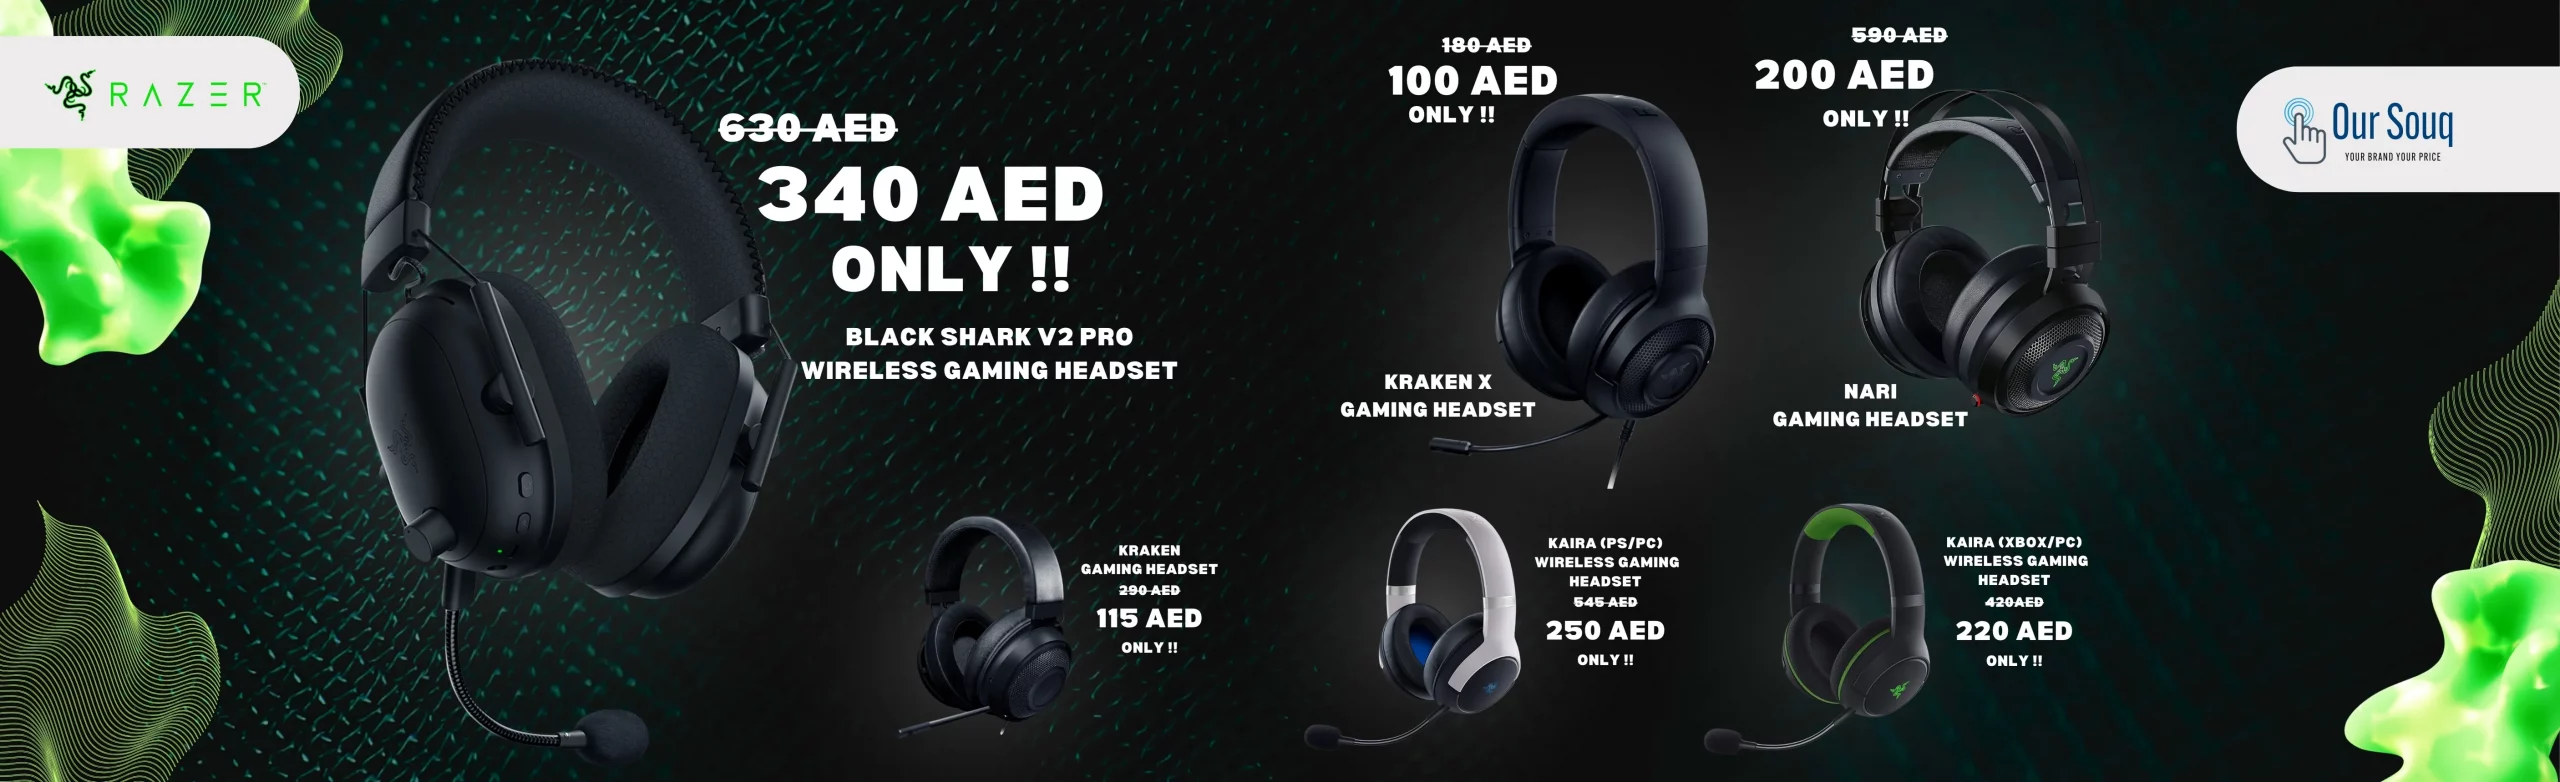 Razer Gaming headset Offer